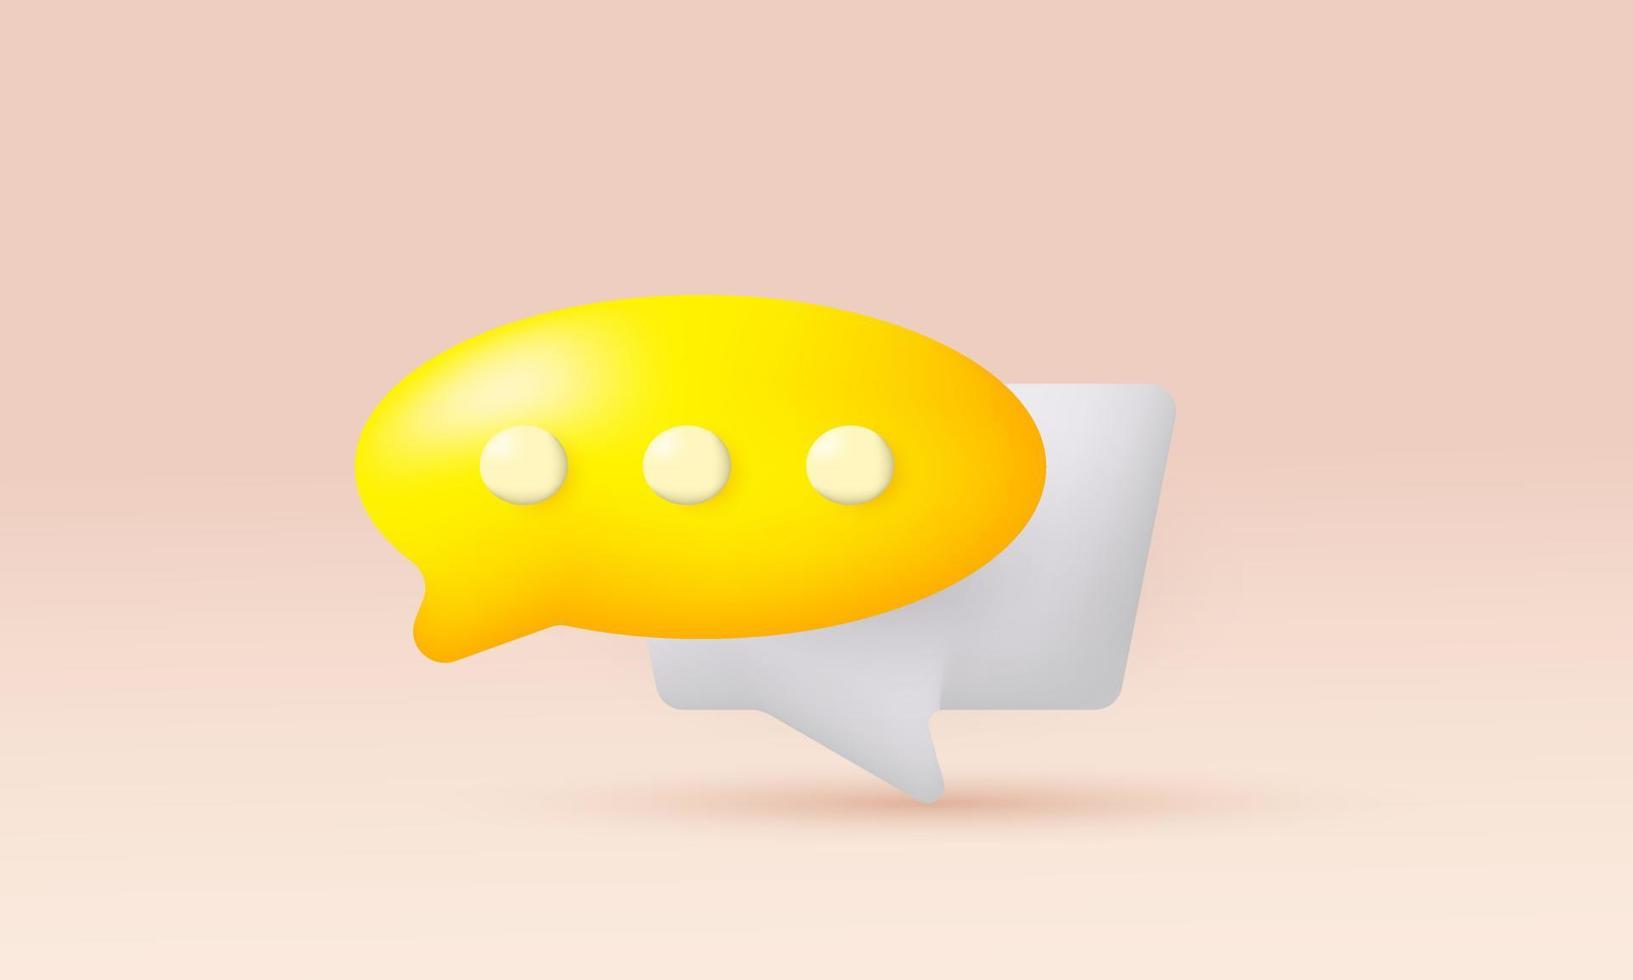 ilustração ícone realista bolhas do discurso símbolo social 3d isolado no fundo vetor